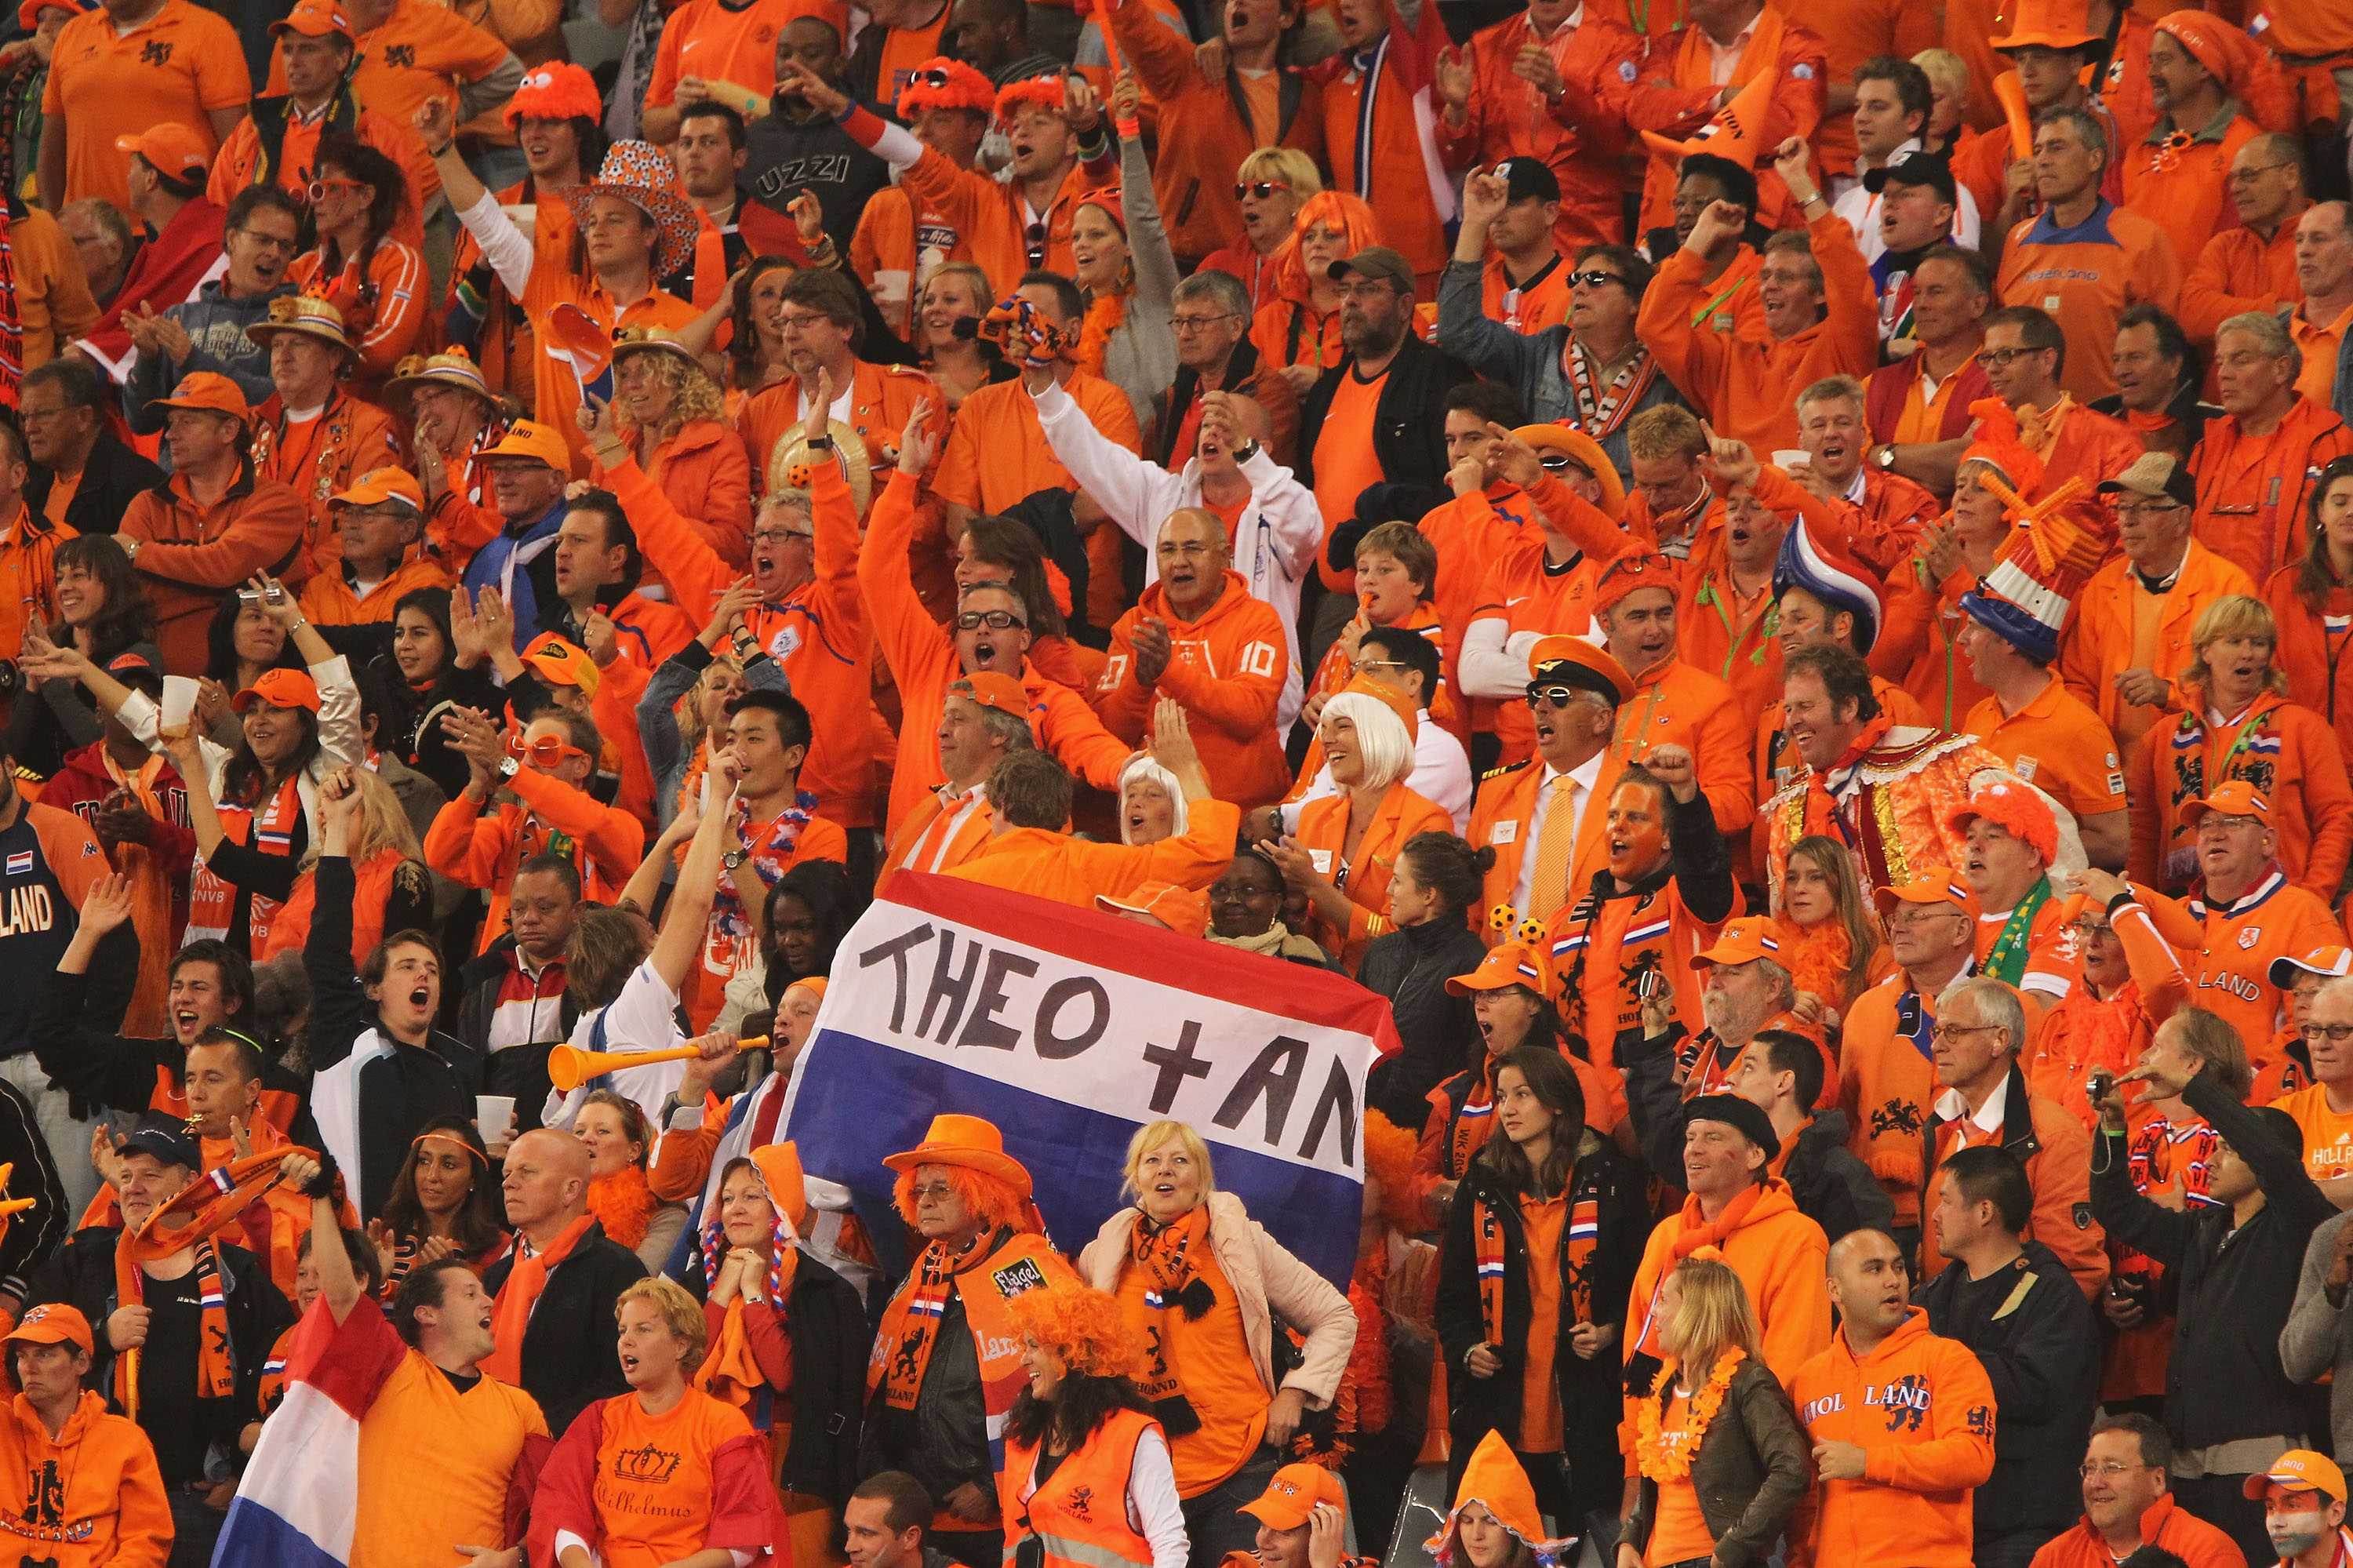 Holländarna är kända för sitt orangea hav som brukar ta över i alla städer de kommer till under mästerskap.